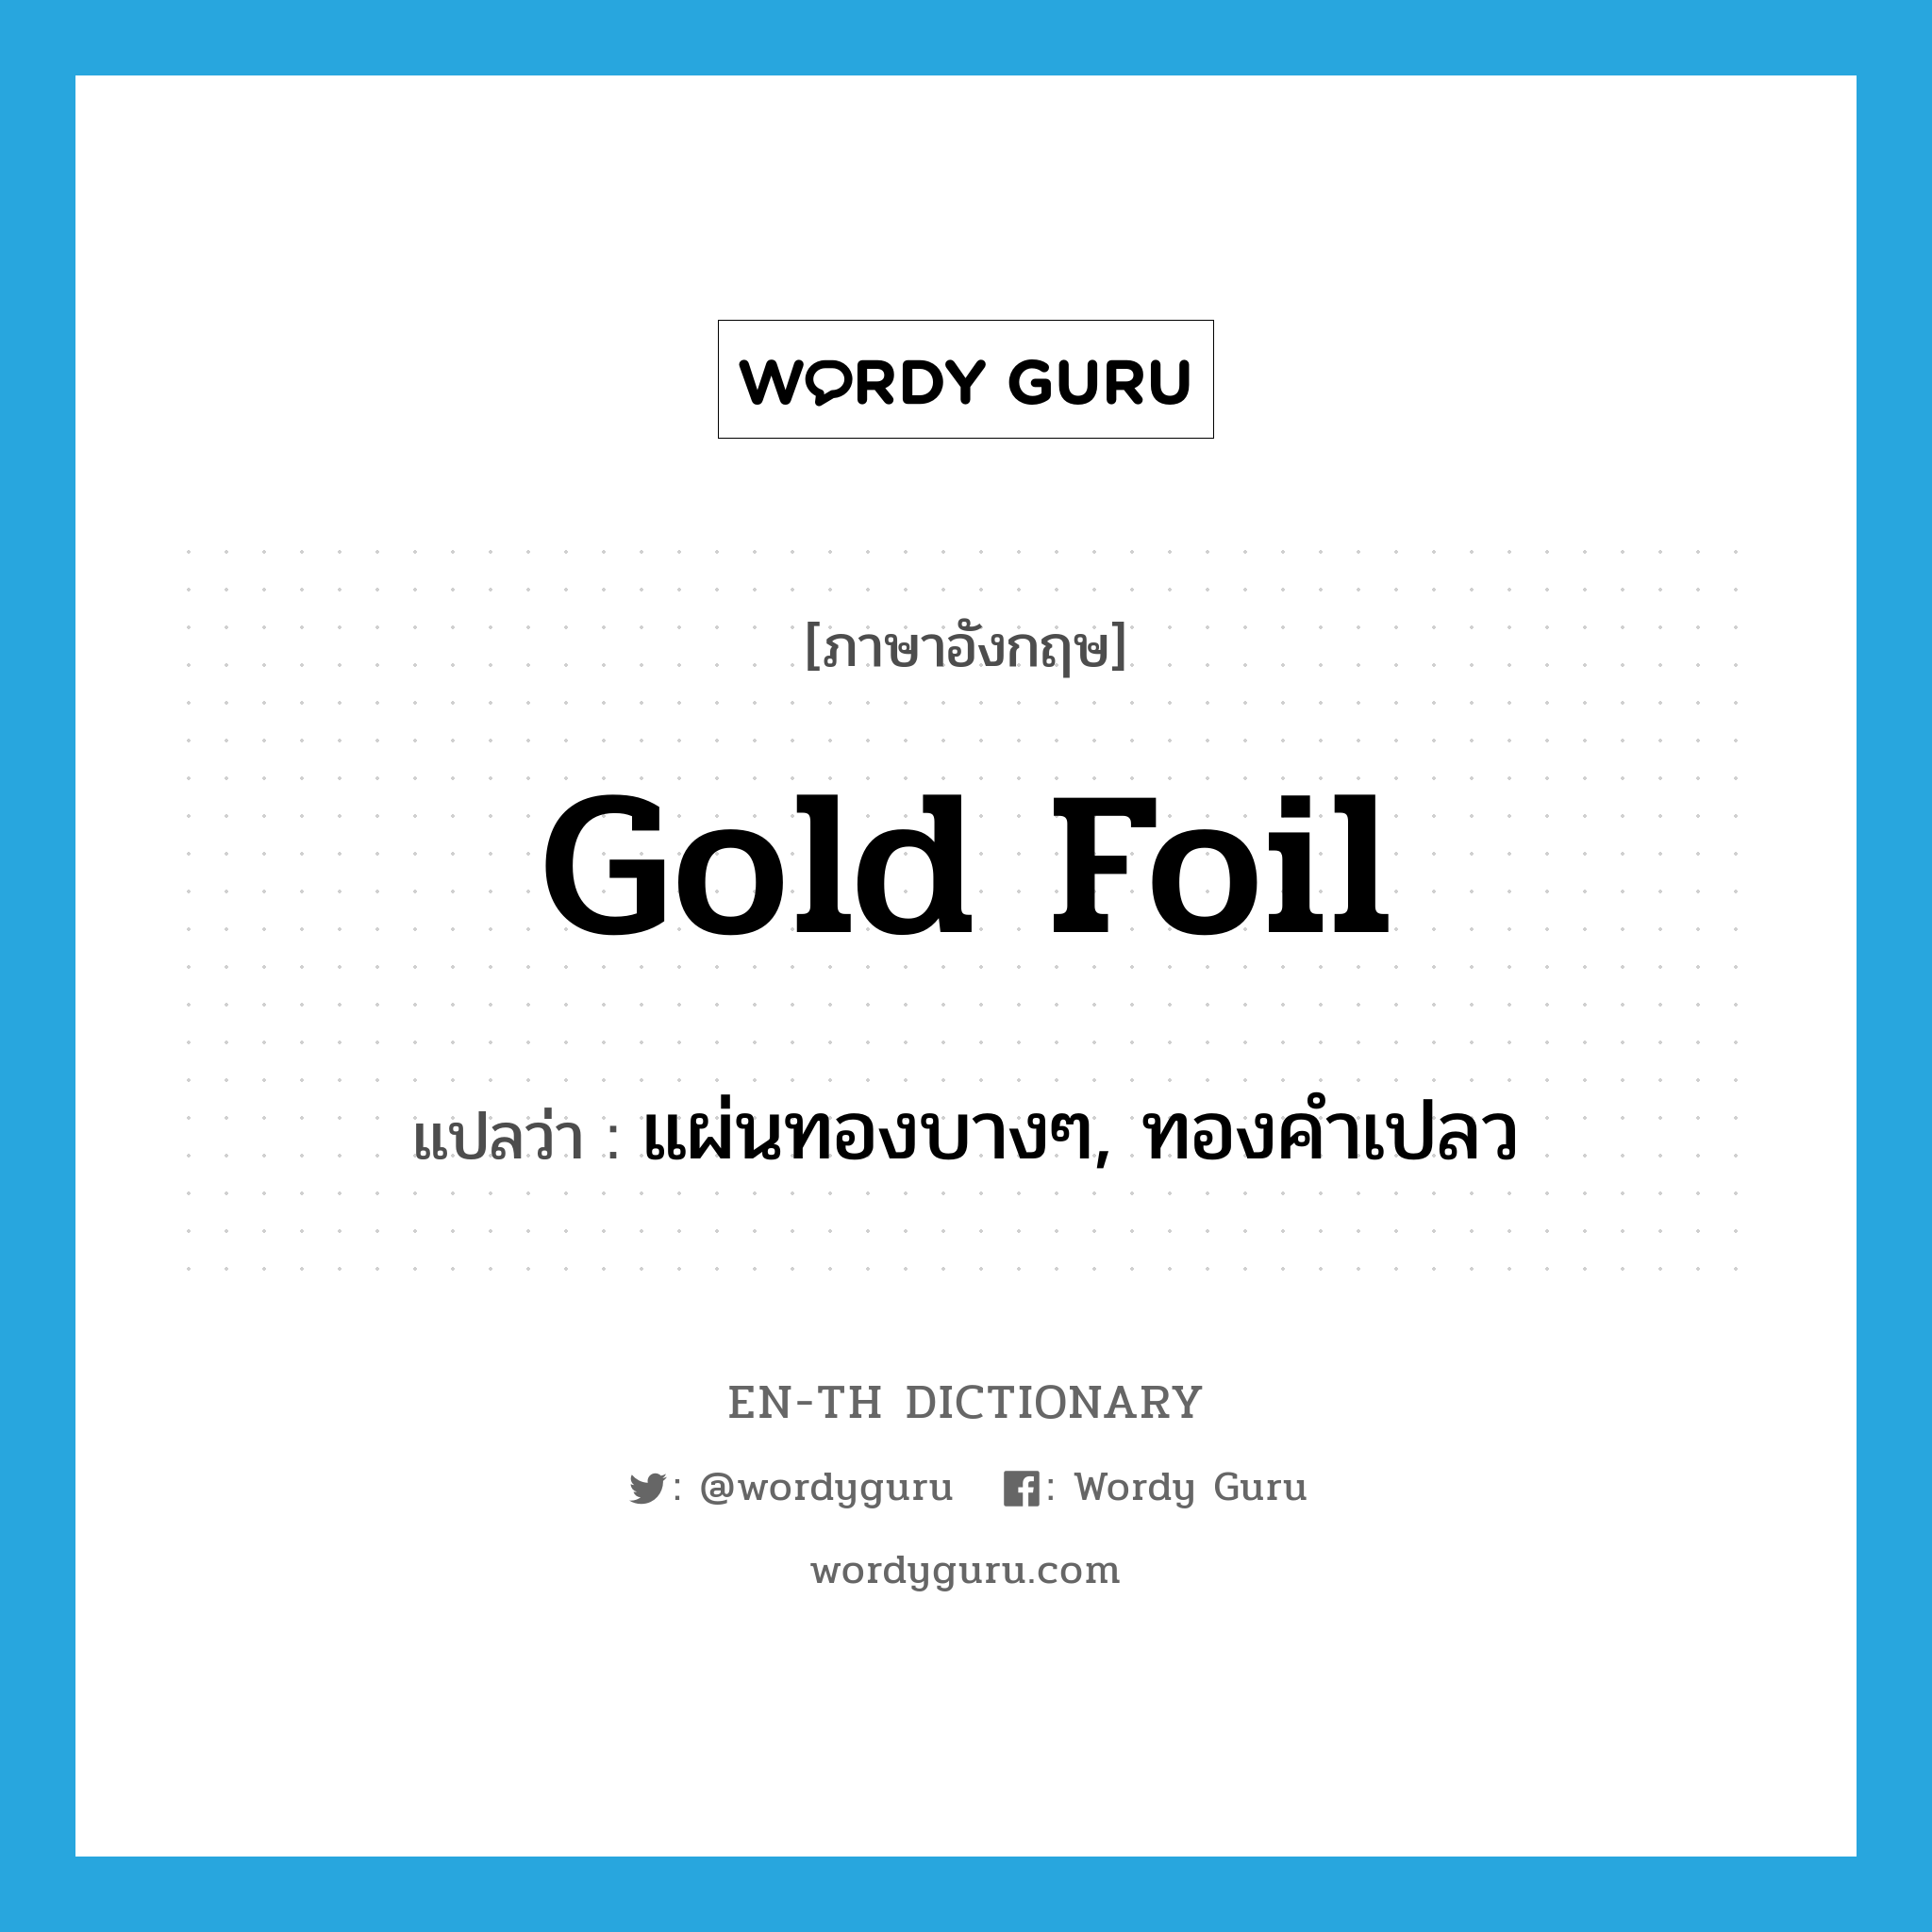 แผ่นทองบางๆ, ทองคำเปลว ภาษาอังกฤษ?, คำศัพท์ภาษาอังกฤษ แผ่นทองบางๆ, ทองคำเปลว แปลว่า gold foil ประเภท N หมวด N